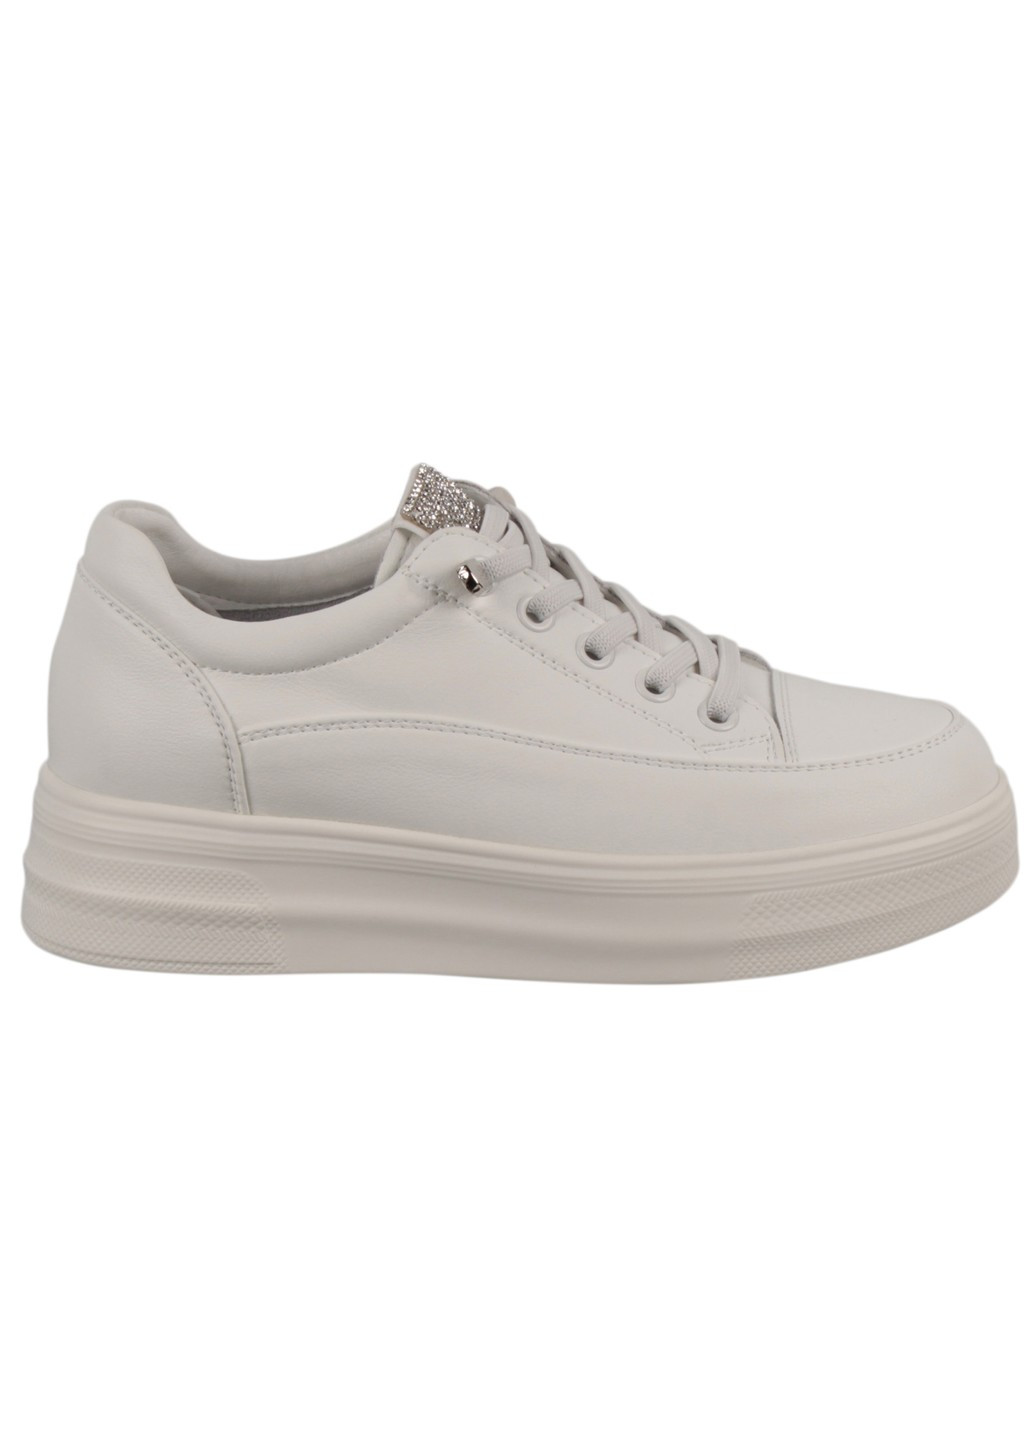 Белые демисезонные женские кроссовки 199392 Lifexpert